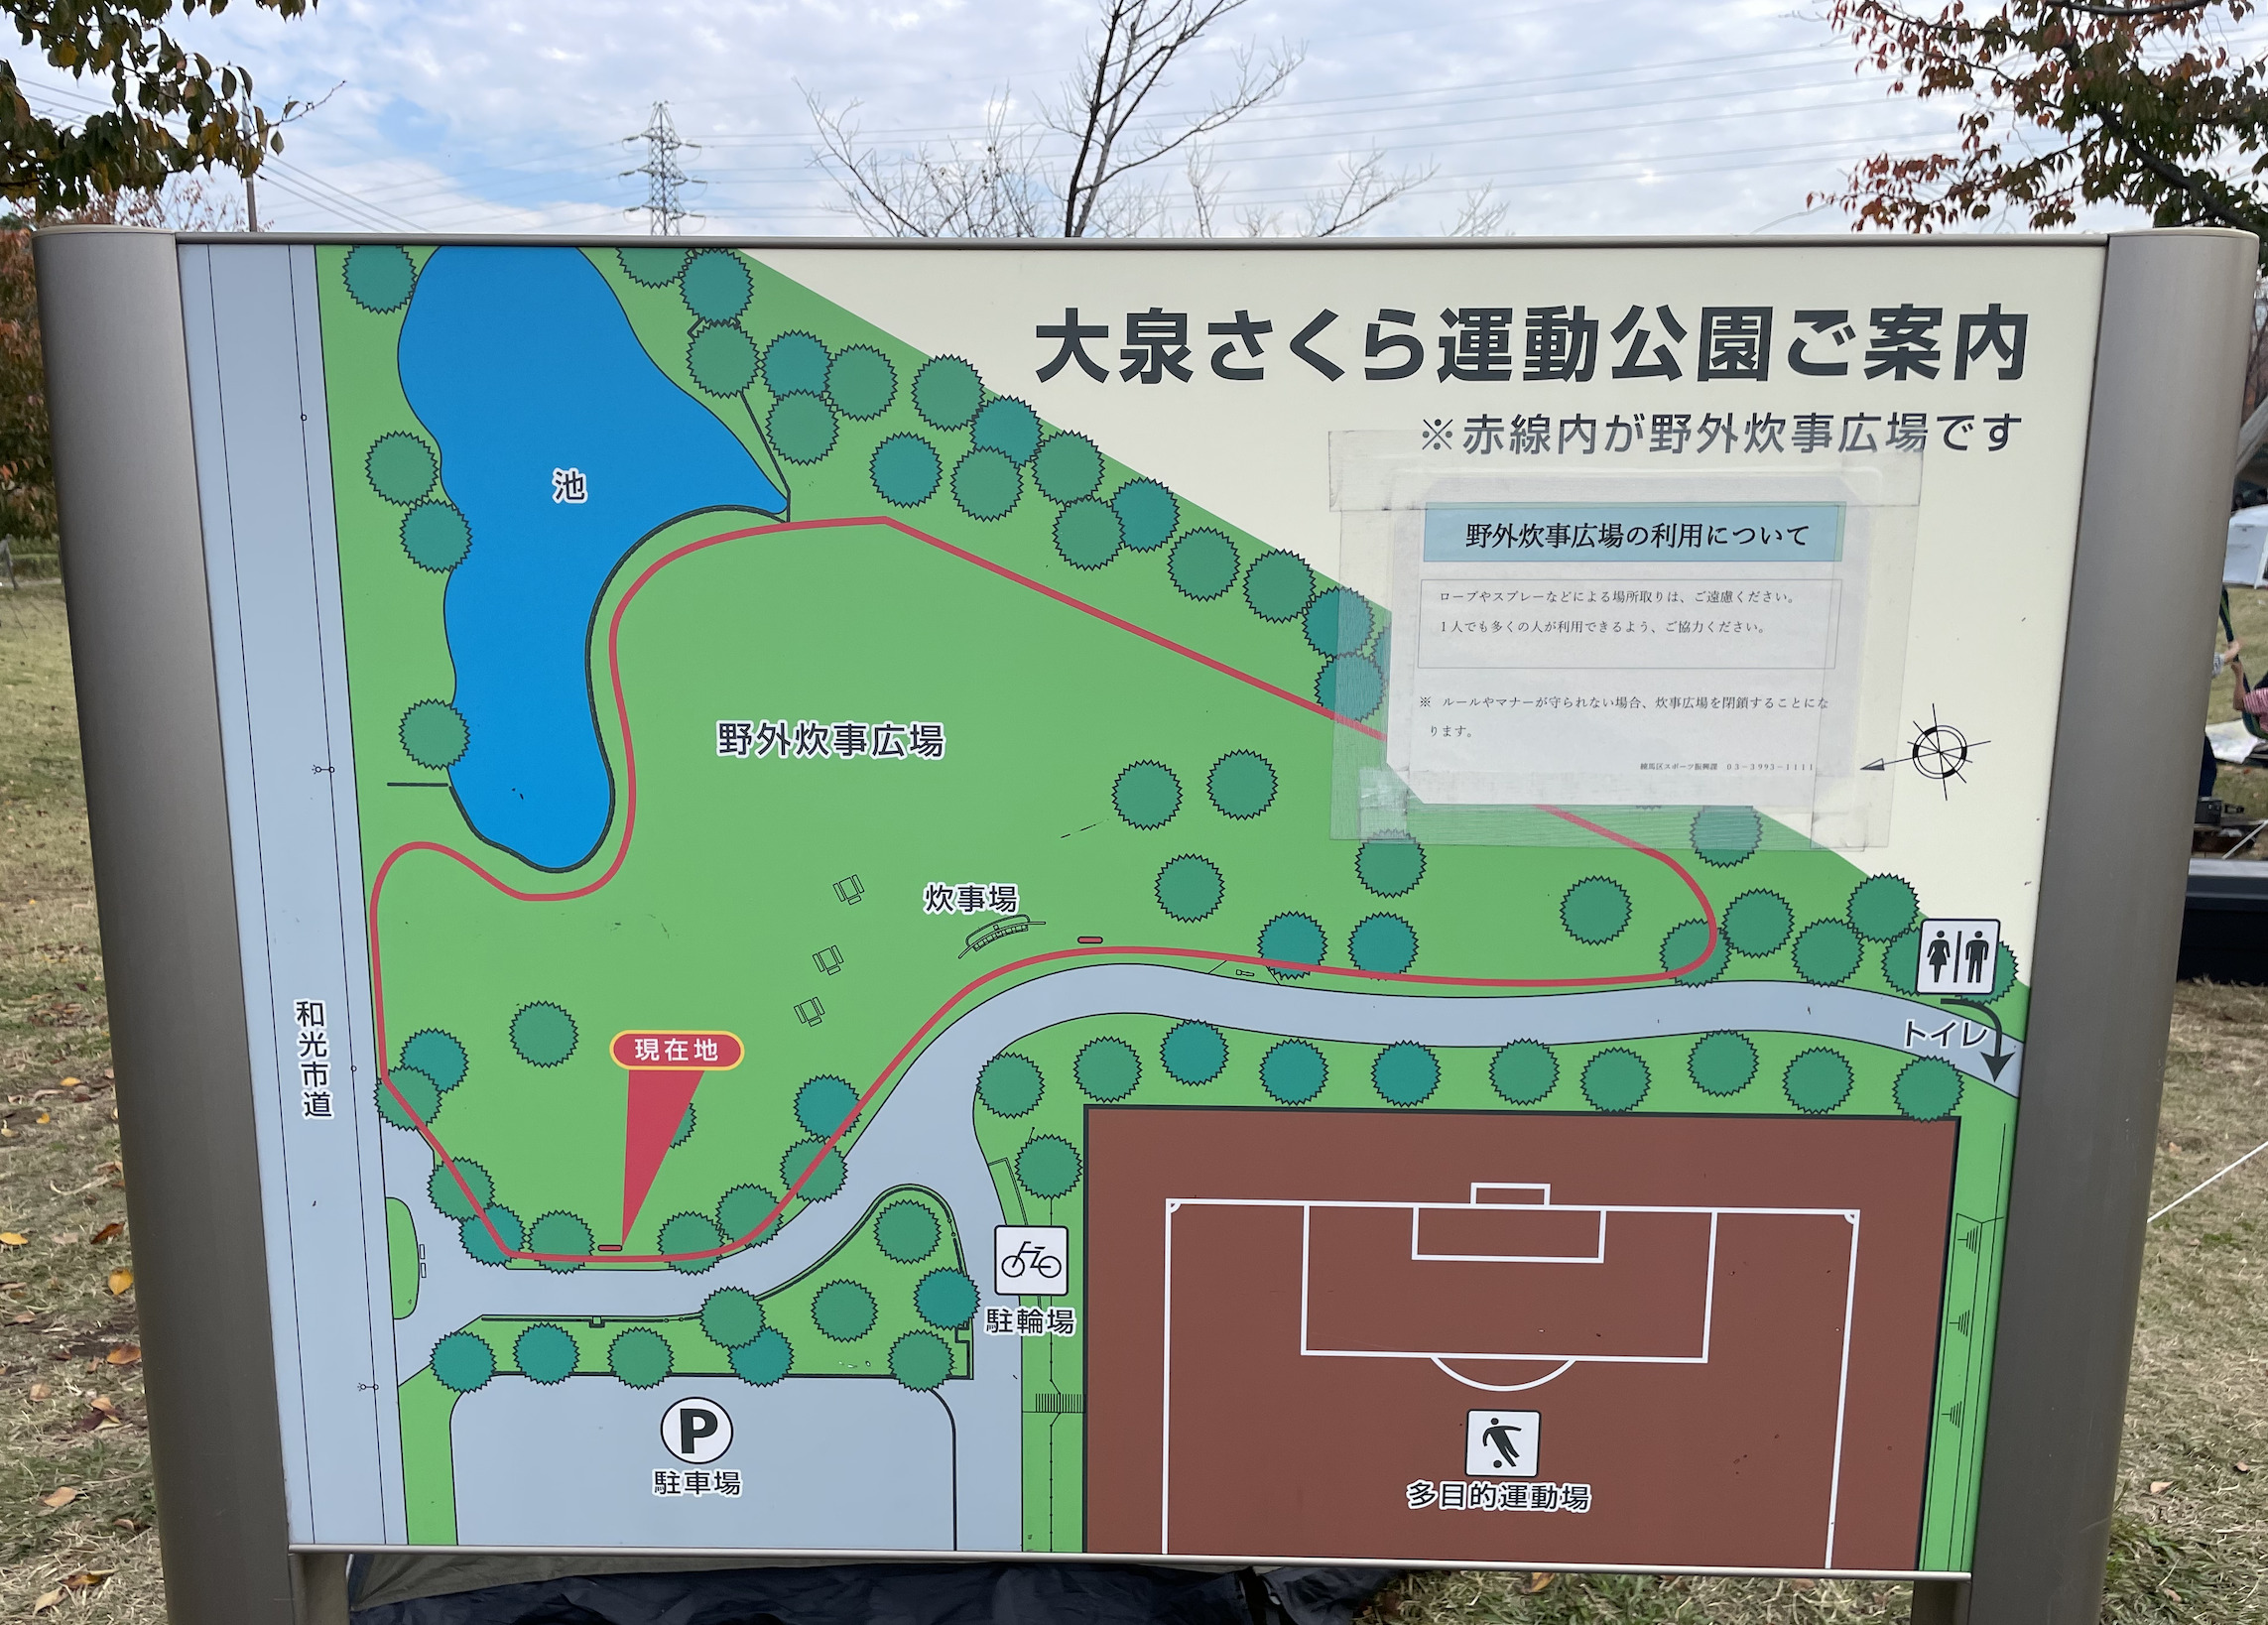 大泉さくら運動公園（野外炊事広場）の場内マップ